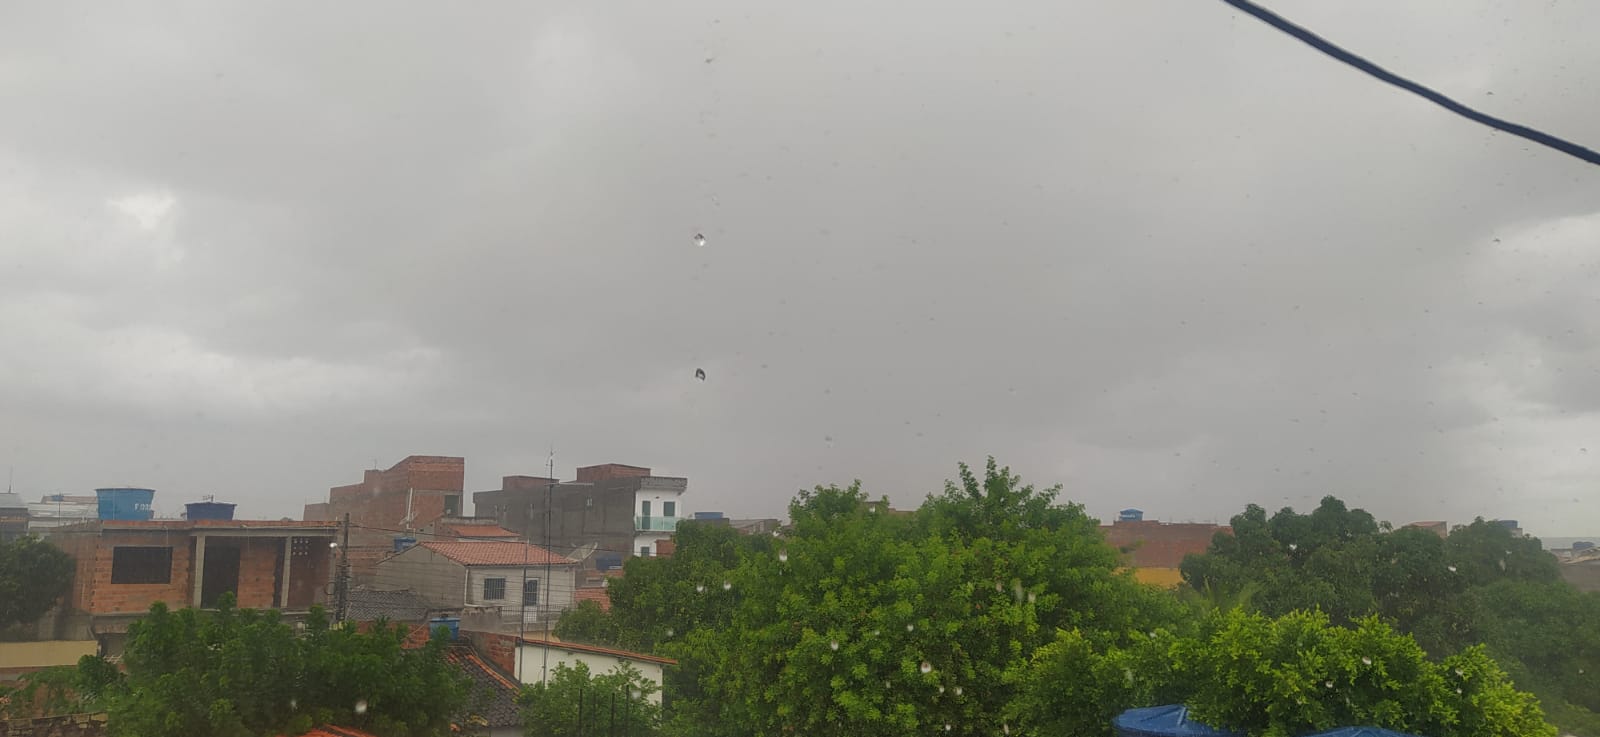 Segunda-feira com chuva em Araci; semana segue com previsão de chuva com trovoada segundo climatempo